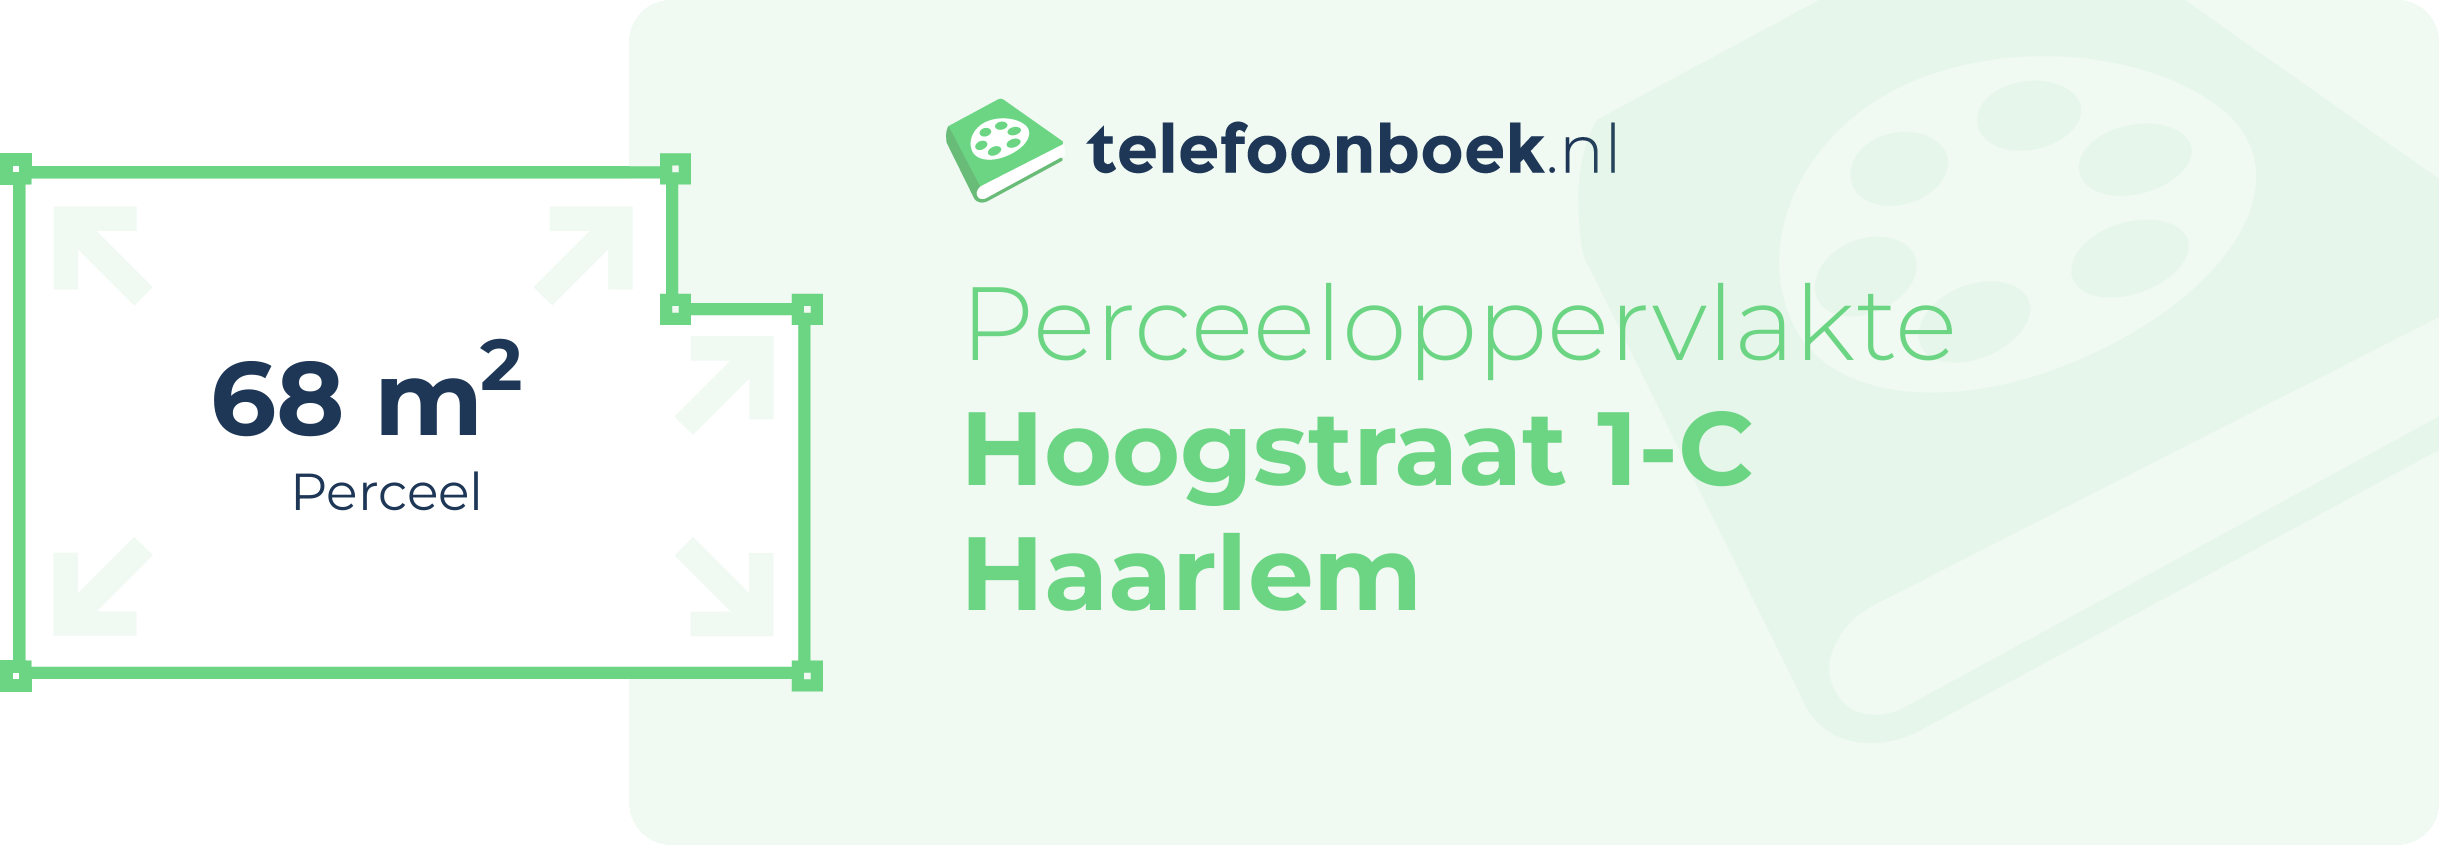 Perceeloppervlakte Hoogstraat 1-C Haarlem